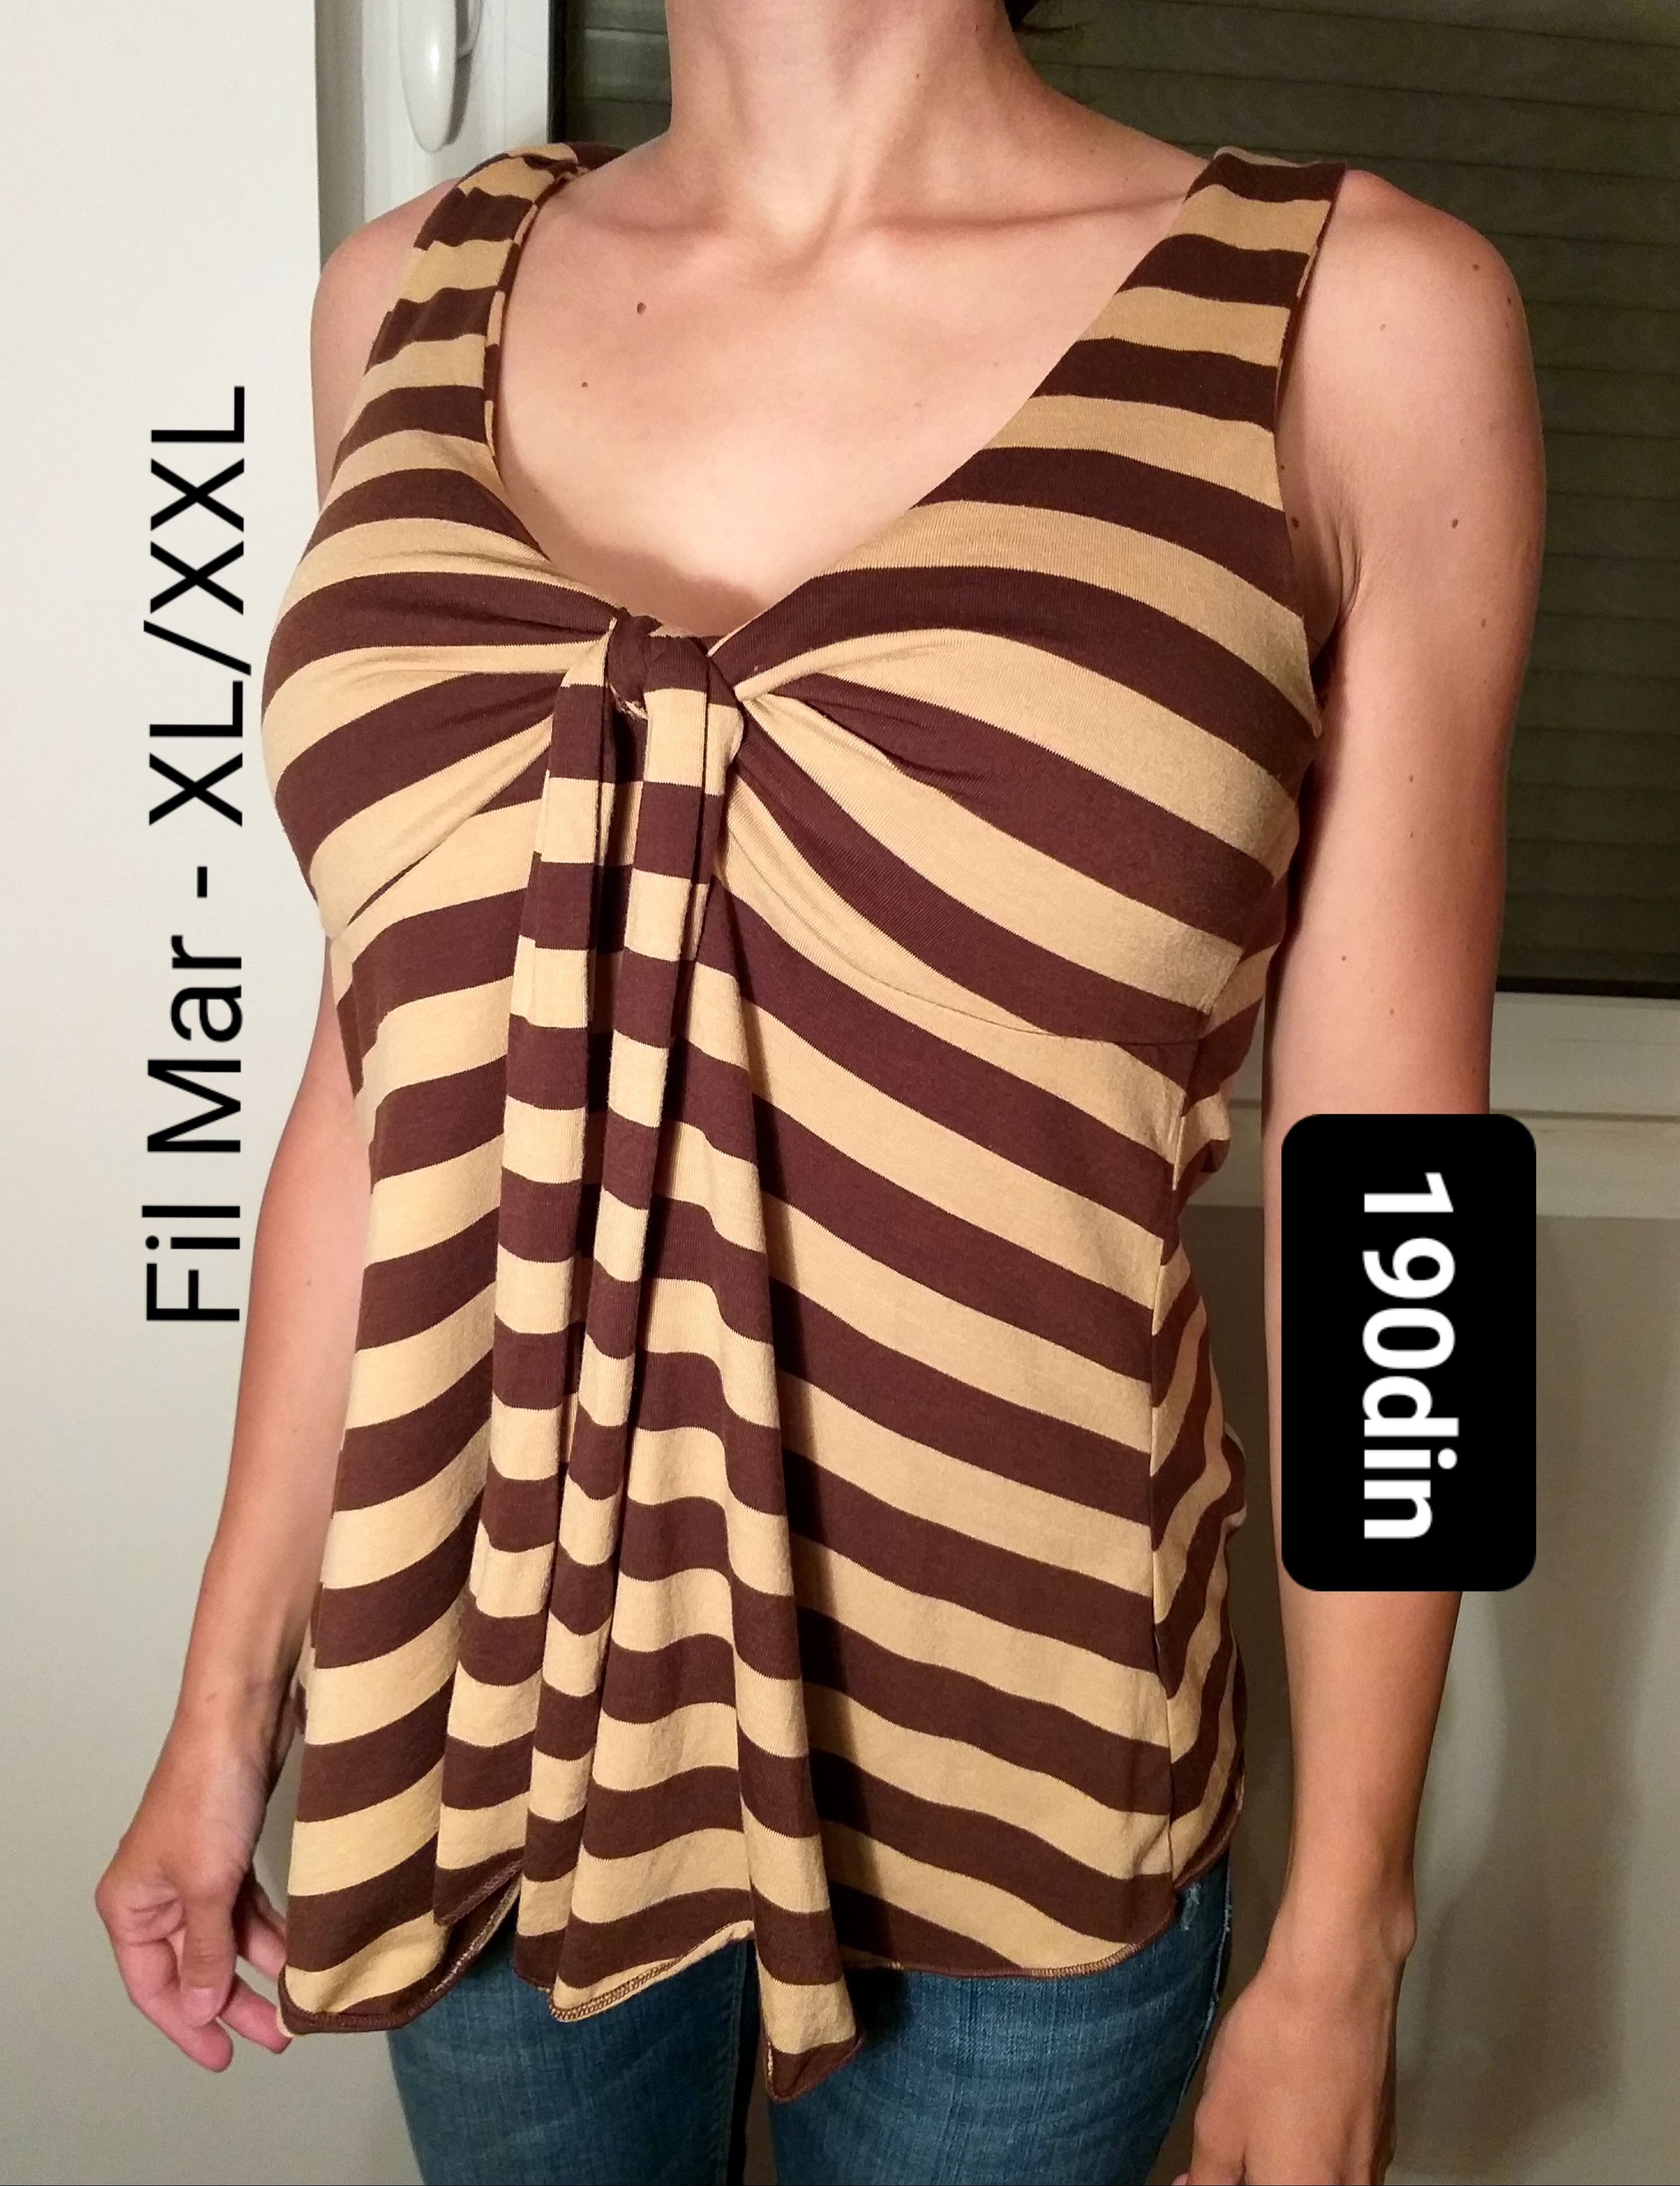 Fil Mar ženska majica na pruge braon XL/XXL - 42/44